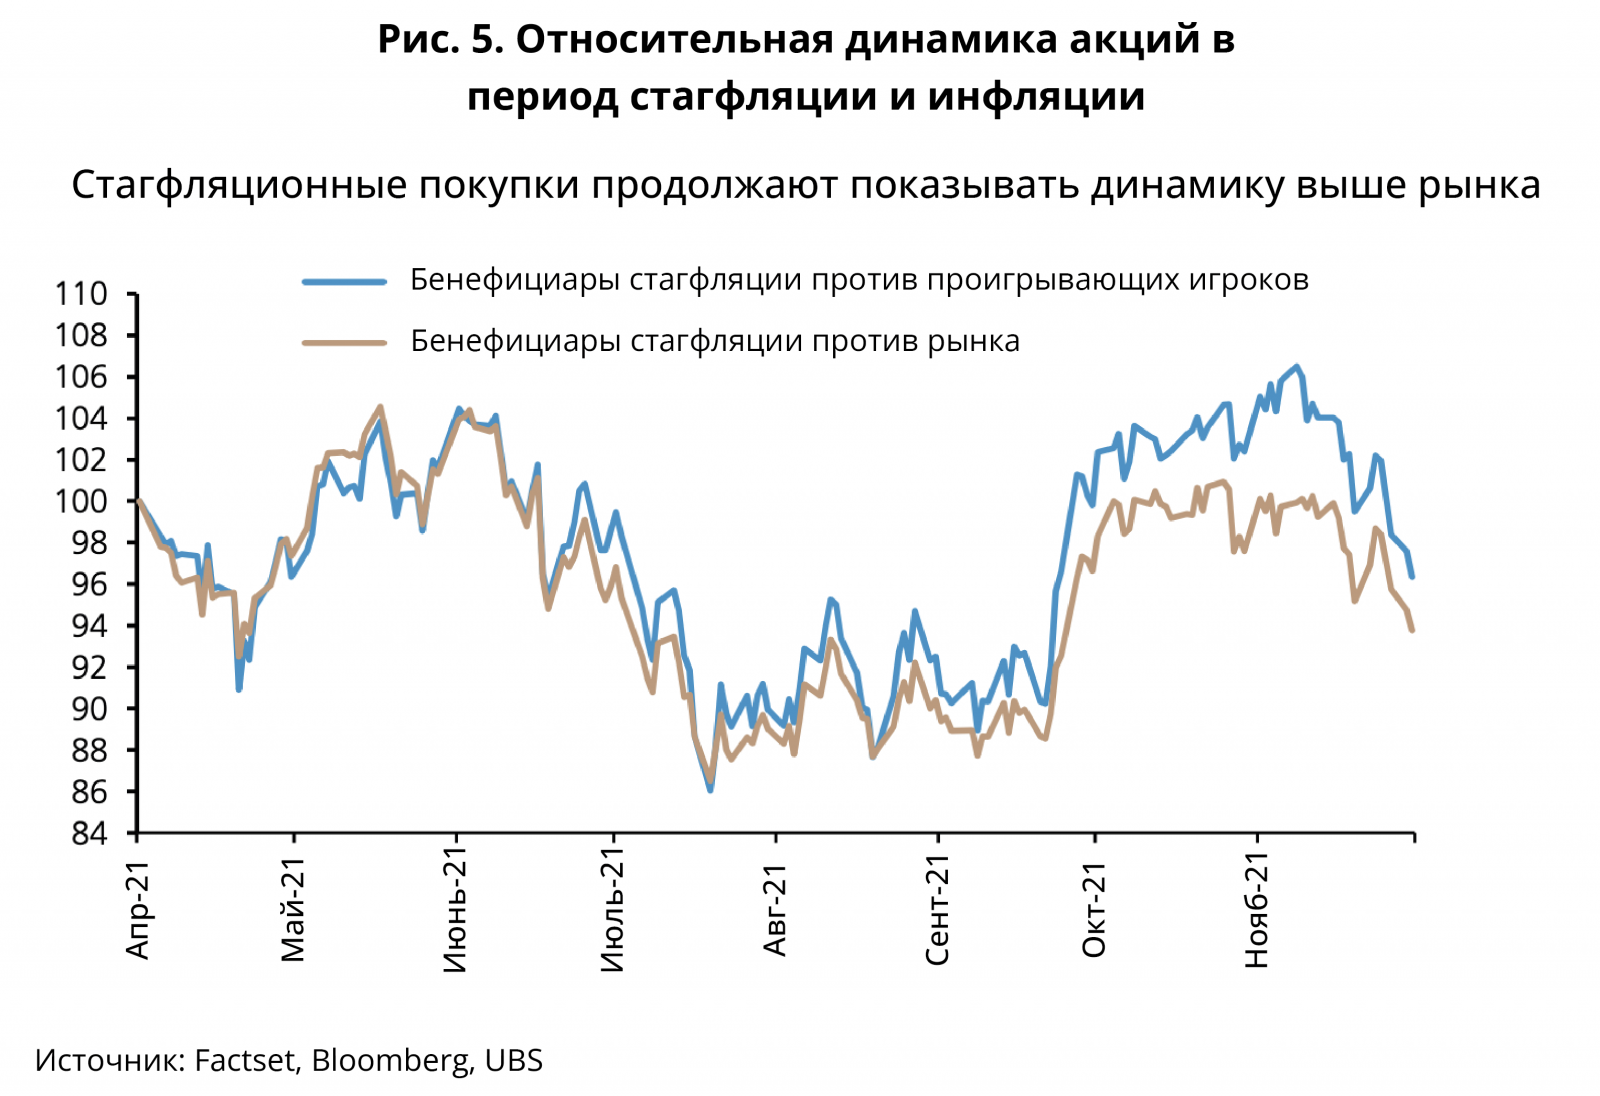 Относительная динамика акций в период стагфляции и инфляции